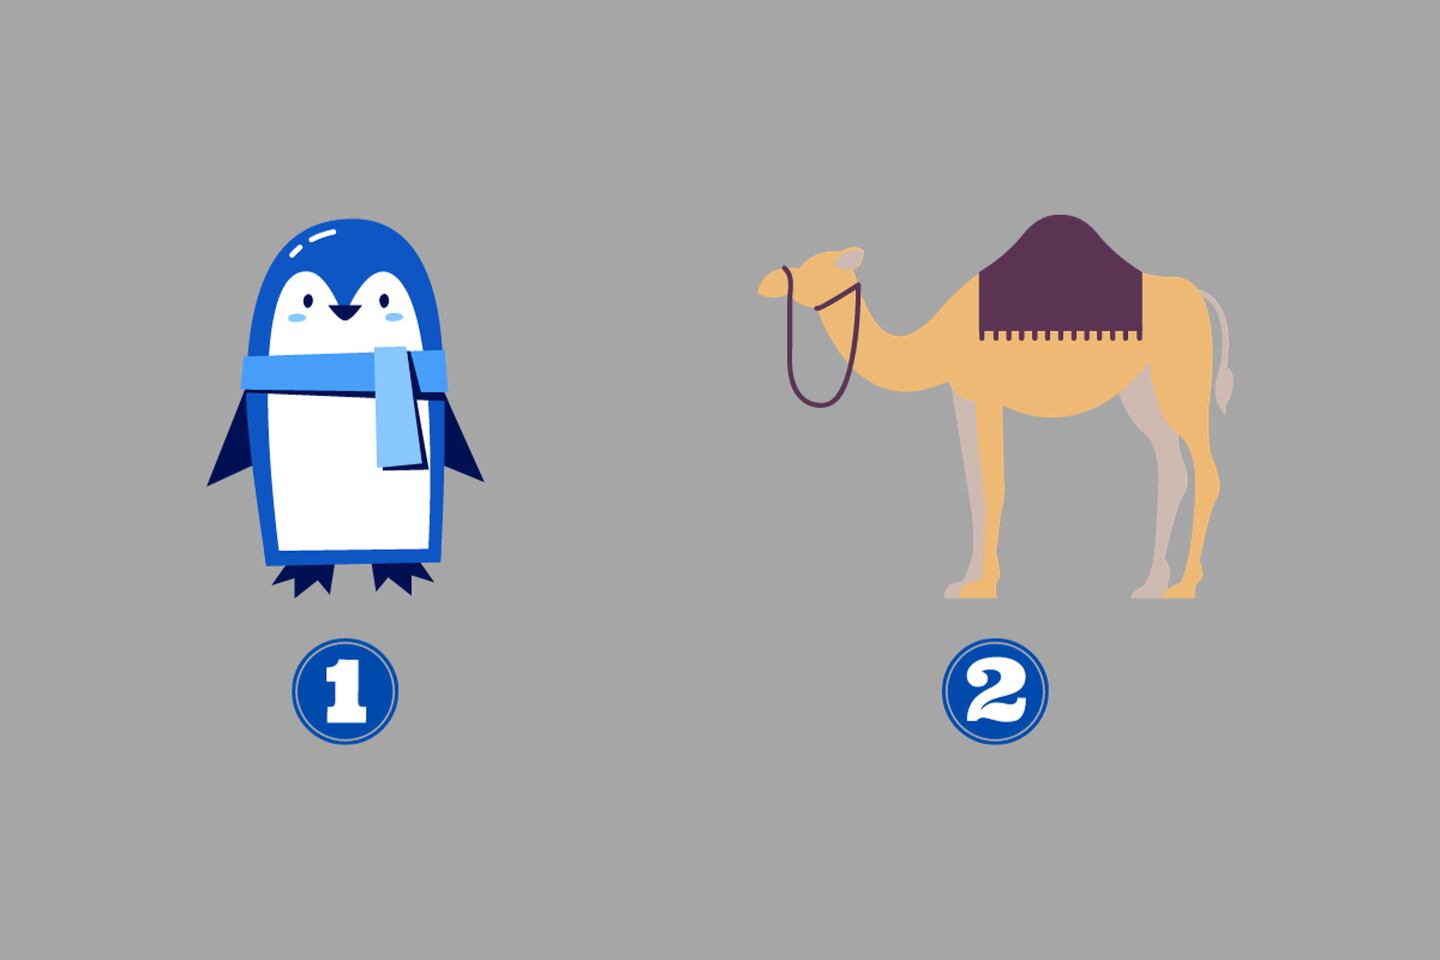 dos alternativas en este test de personalidad: un pingüino y un camello.